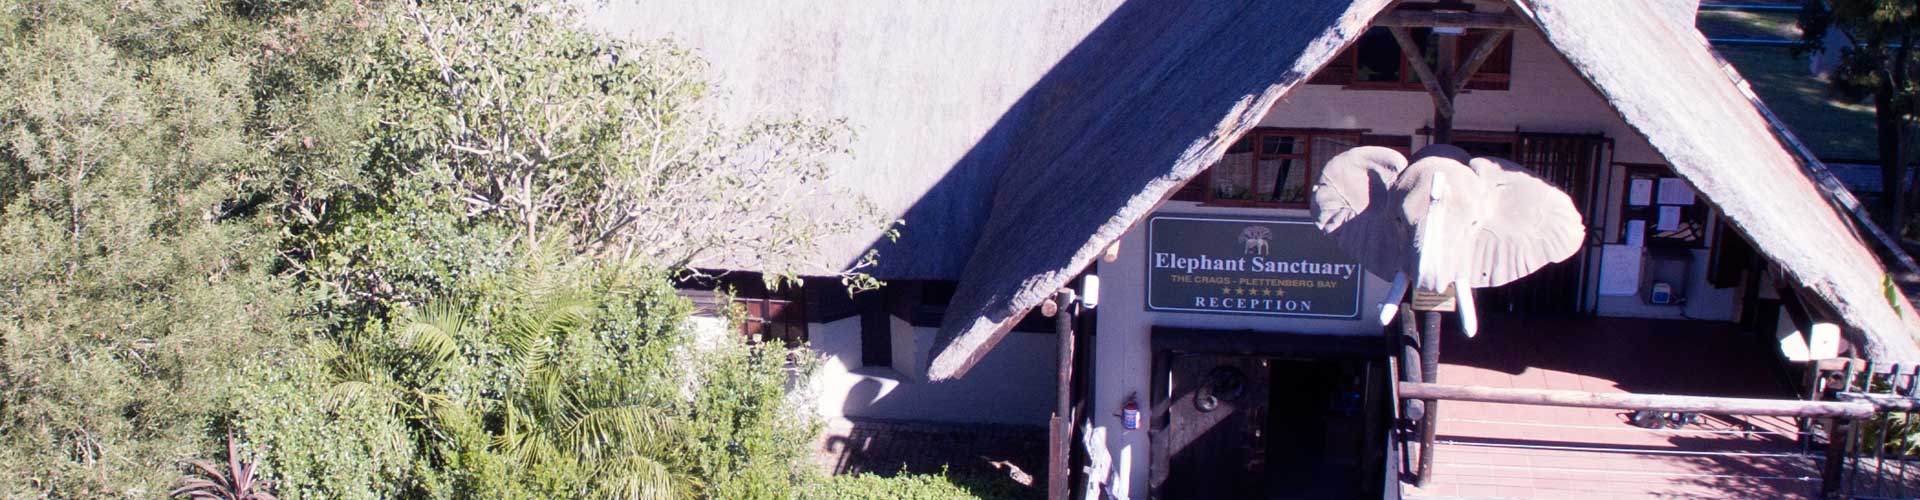 plettenberg contact elephant santuary